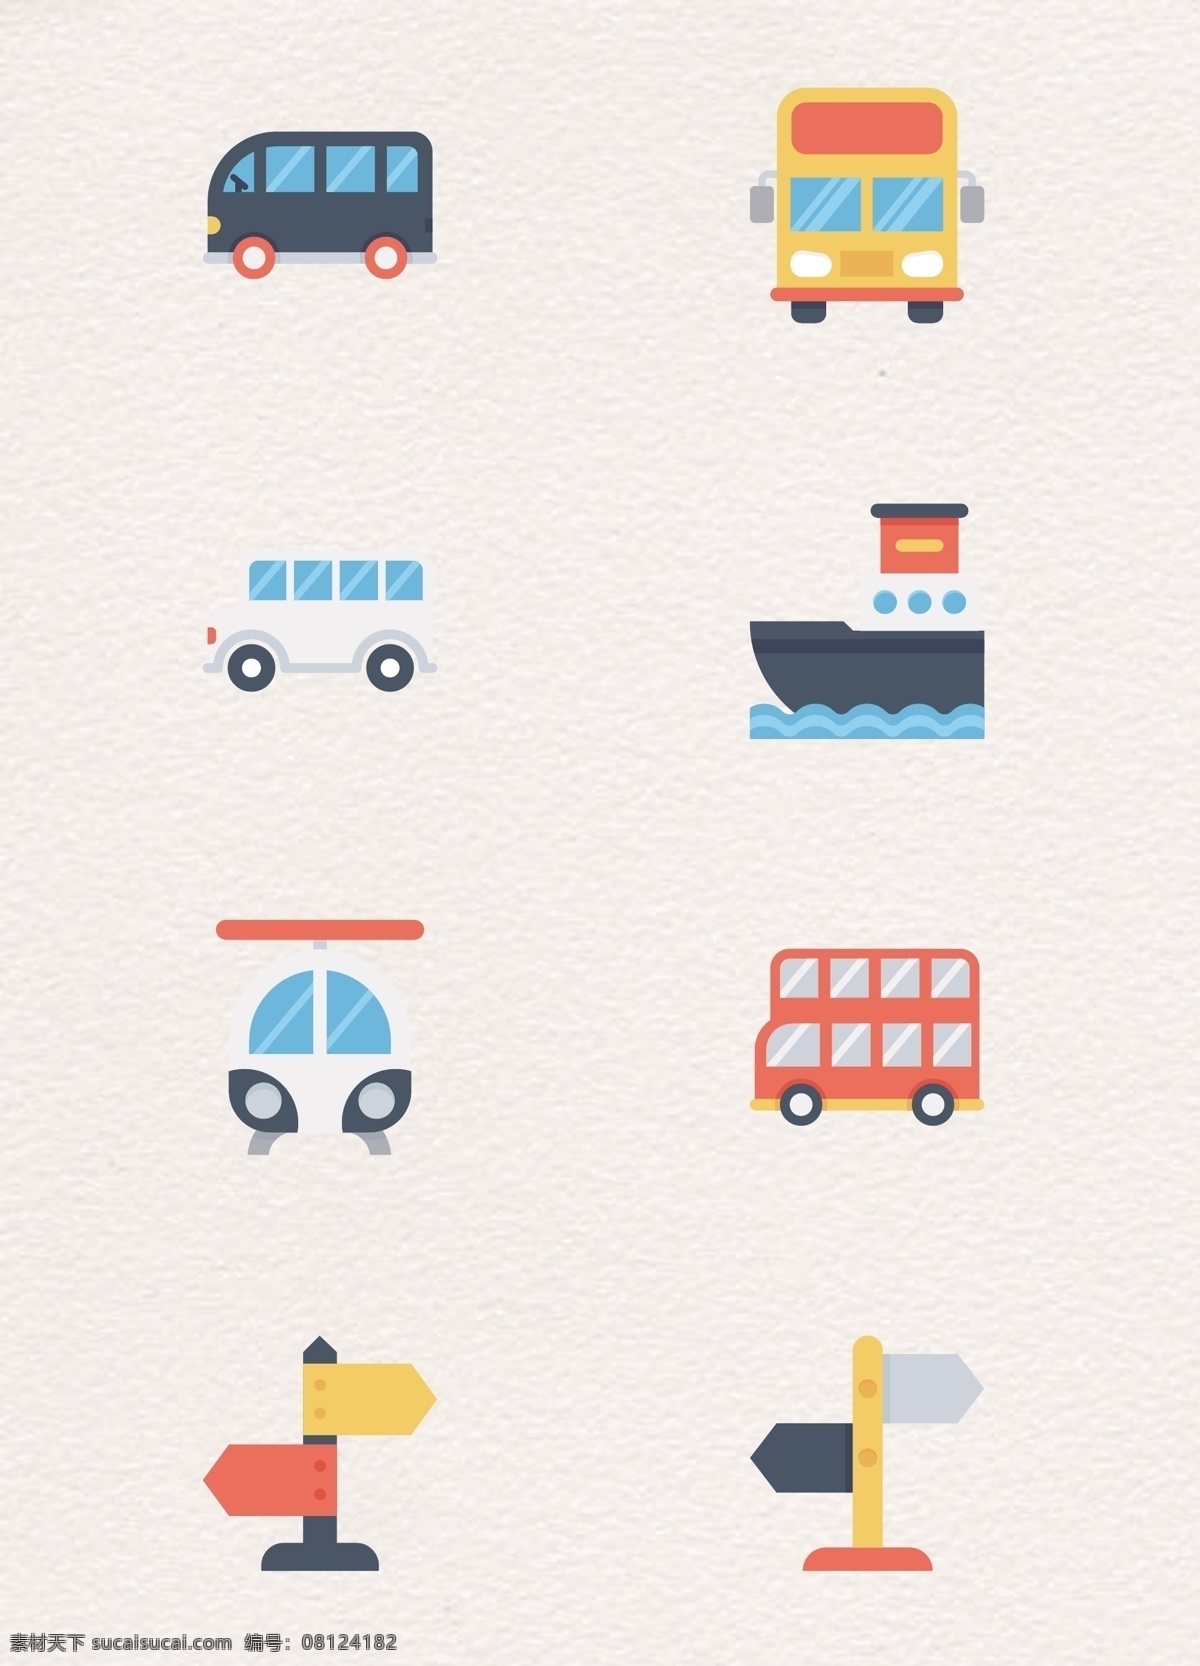 创意 卡通 交通运输 类 图标素材 合集 公交车 轮船 路牌 矢量 交通工具 救护车 电车 大巴车